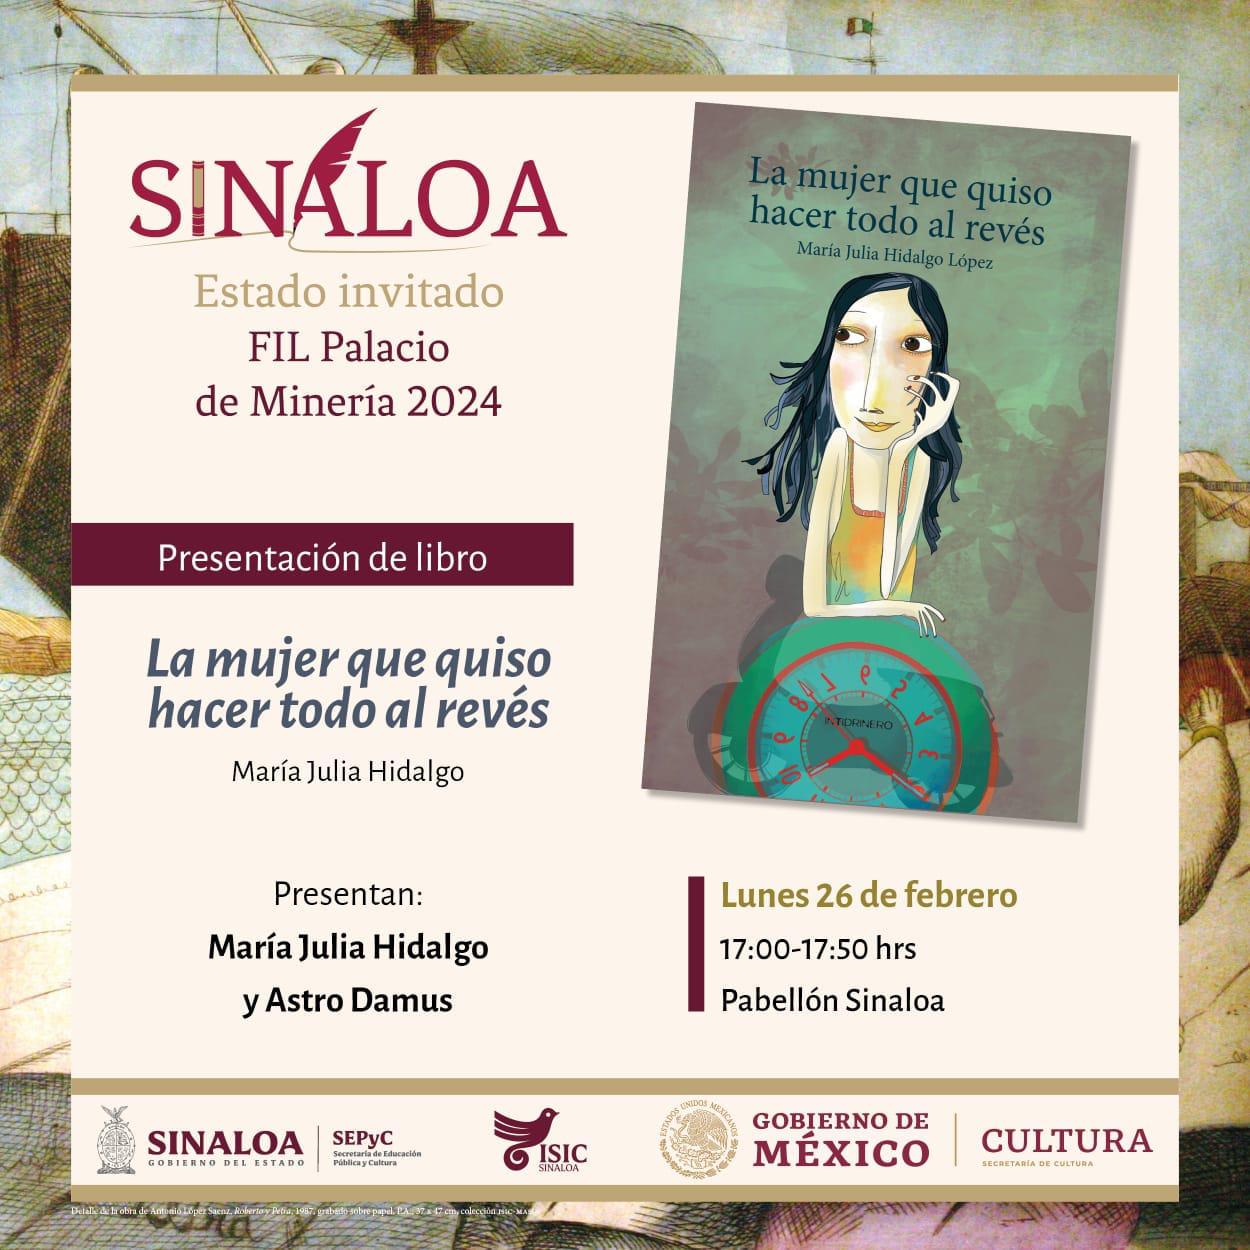 $!“La mujer que quiso hacer todo al revés”, de la escritora, María Julia Hidalgo López, se presentará este lunes 26 de febrero a partir de las 17:00 horas, en la Feria Internacional del Libro del Palacio de Minería, Pabellón Sinaloa.